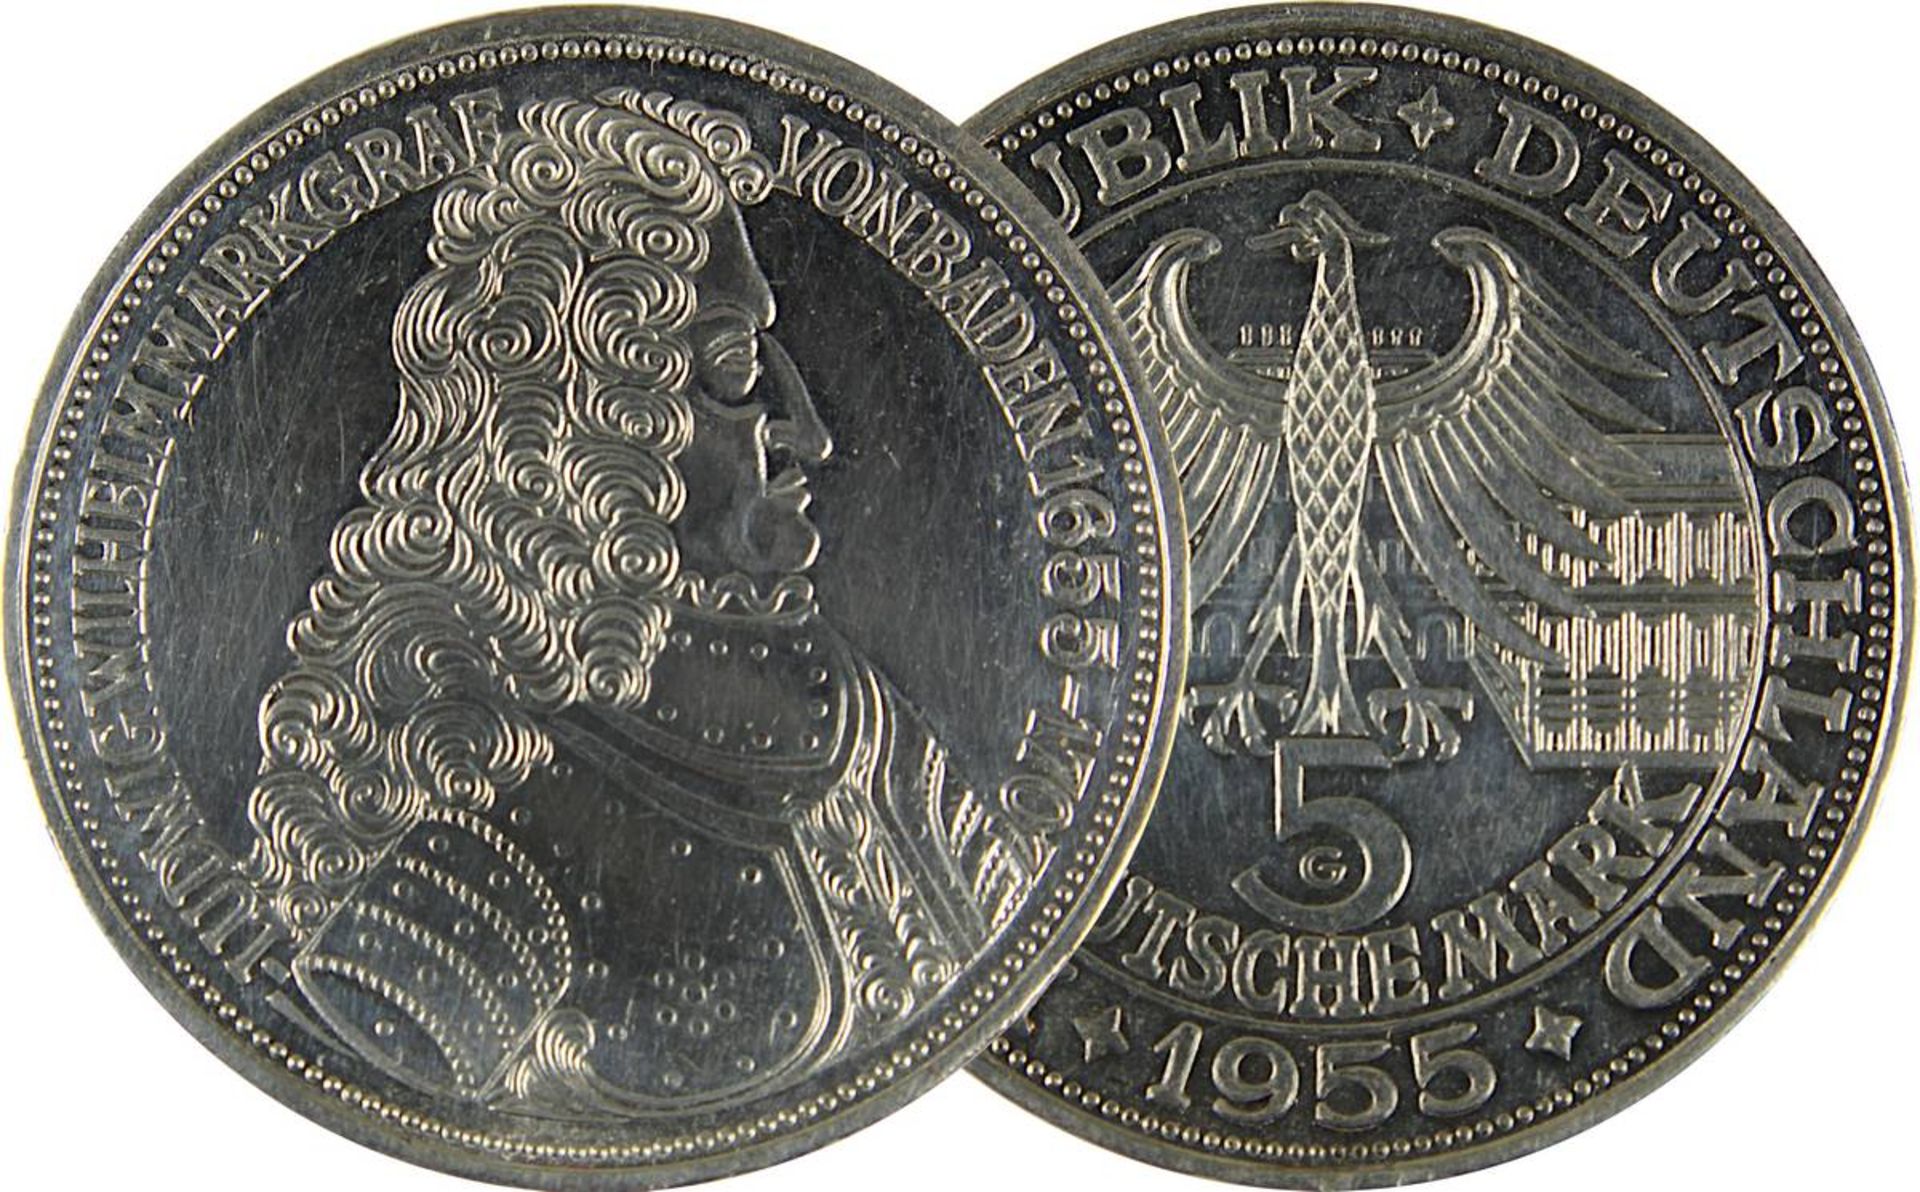 Silbermünze 5 DM, Gedenkmünze Bundesrepublik Deutschland 1955, Av. mit Portrait Ludwig Wilhelm